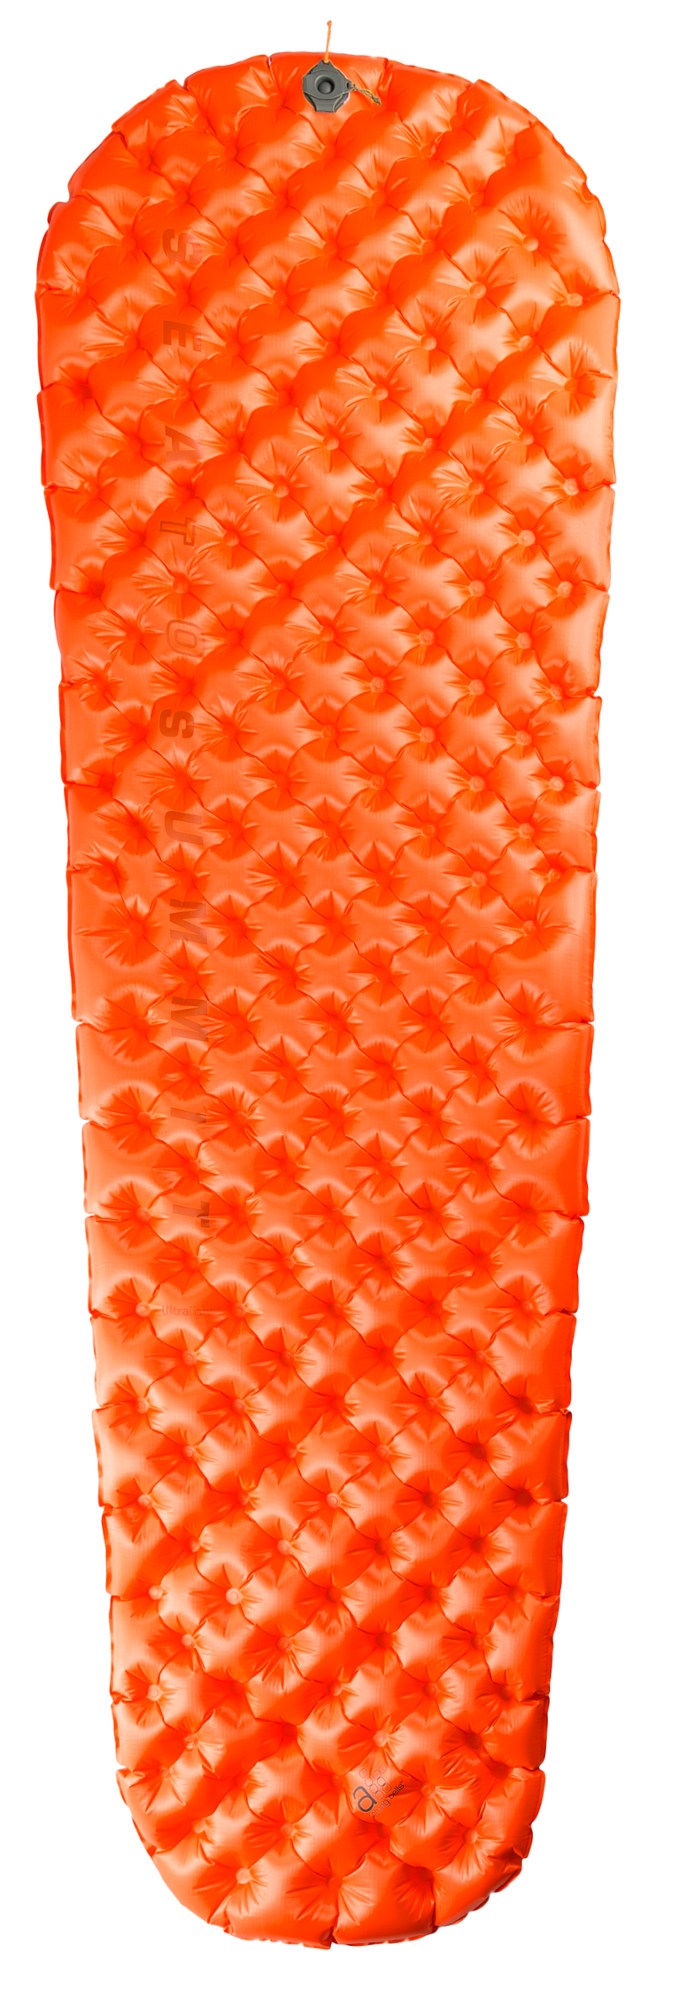 Сверхлегкий изолированный воздушный спальный коврик Sea to Summit, оранжевый